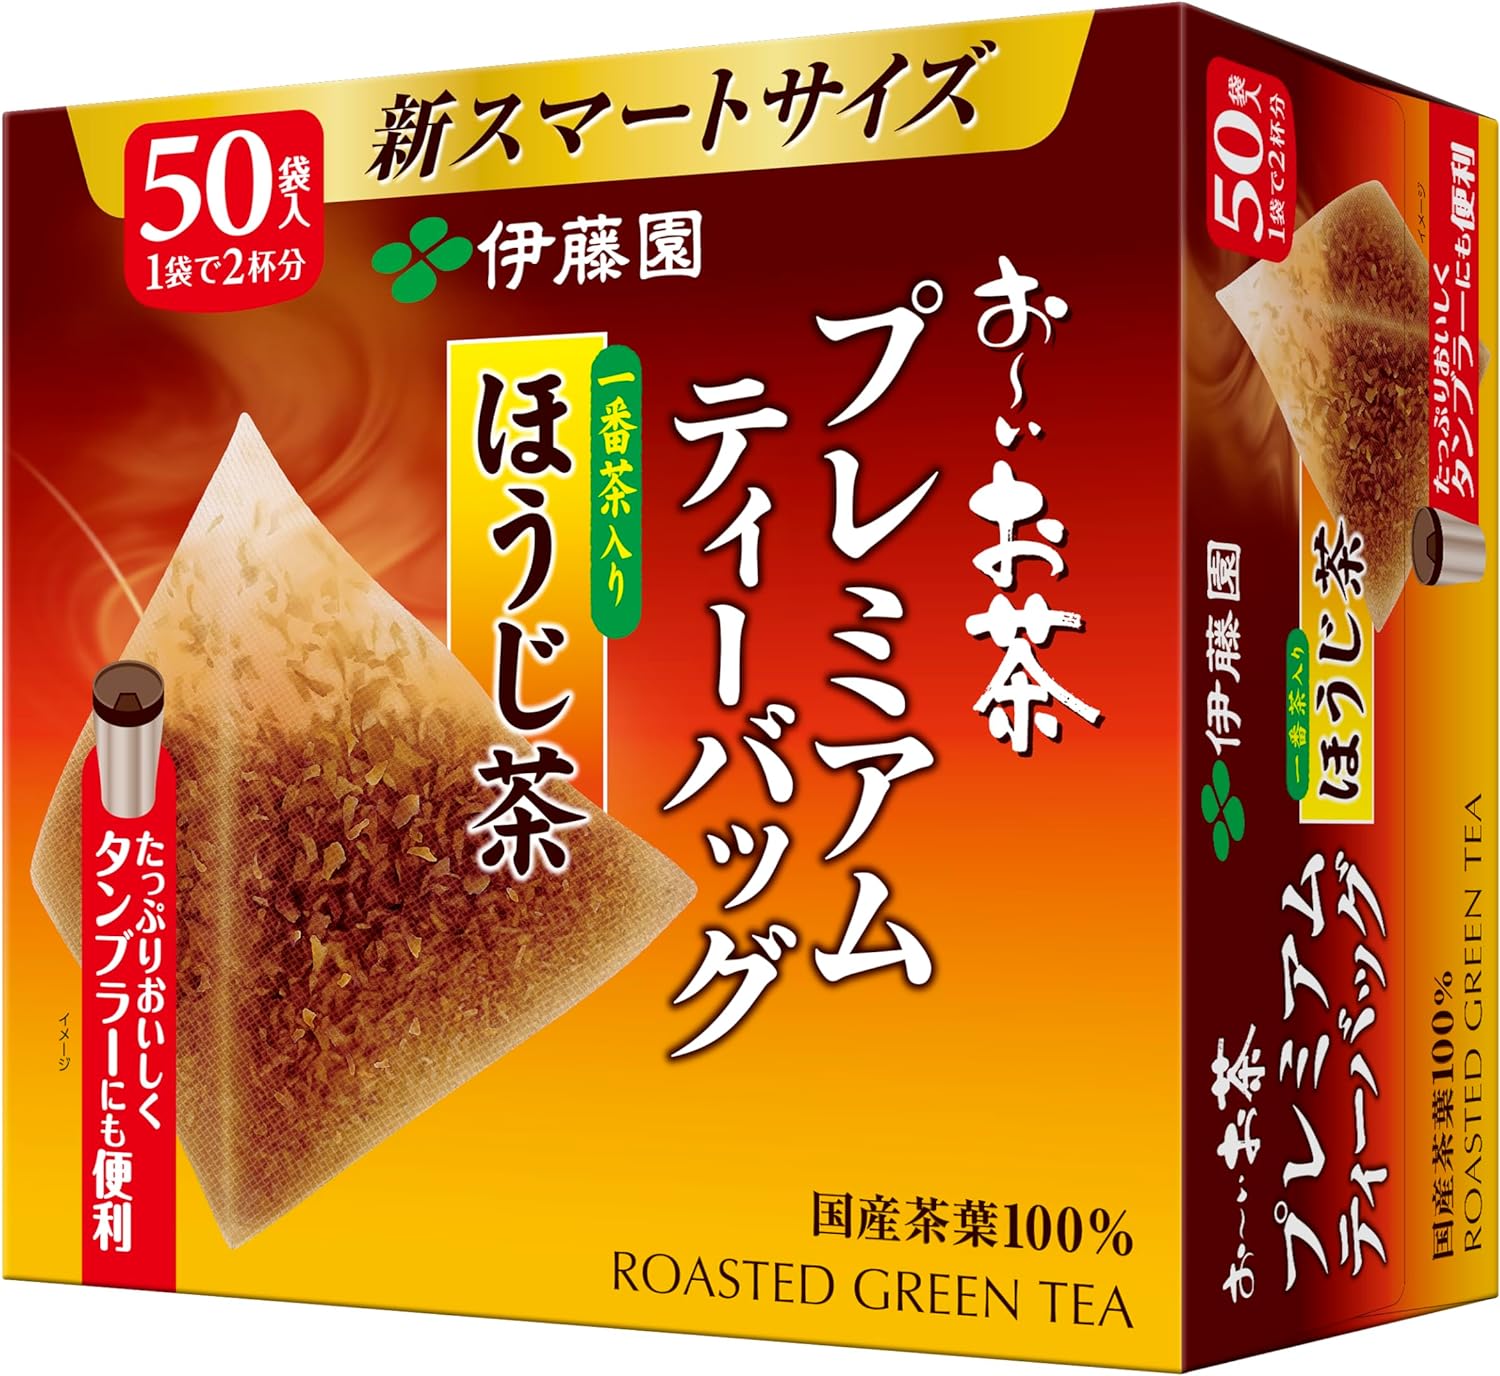 Ito En Premium Bag Roasted Green Tea 50 Packs